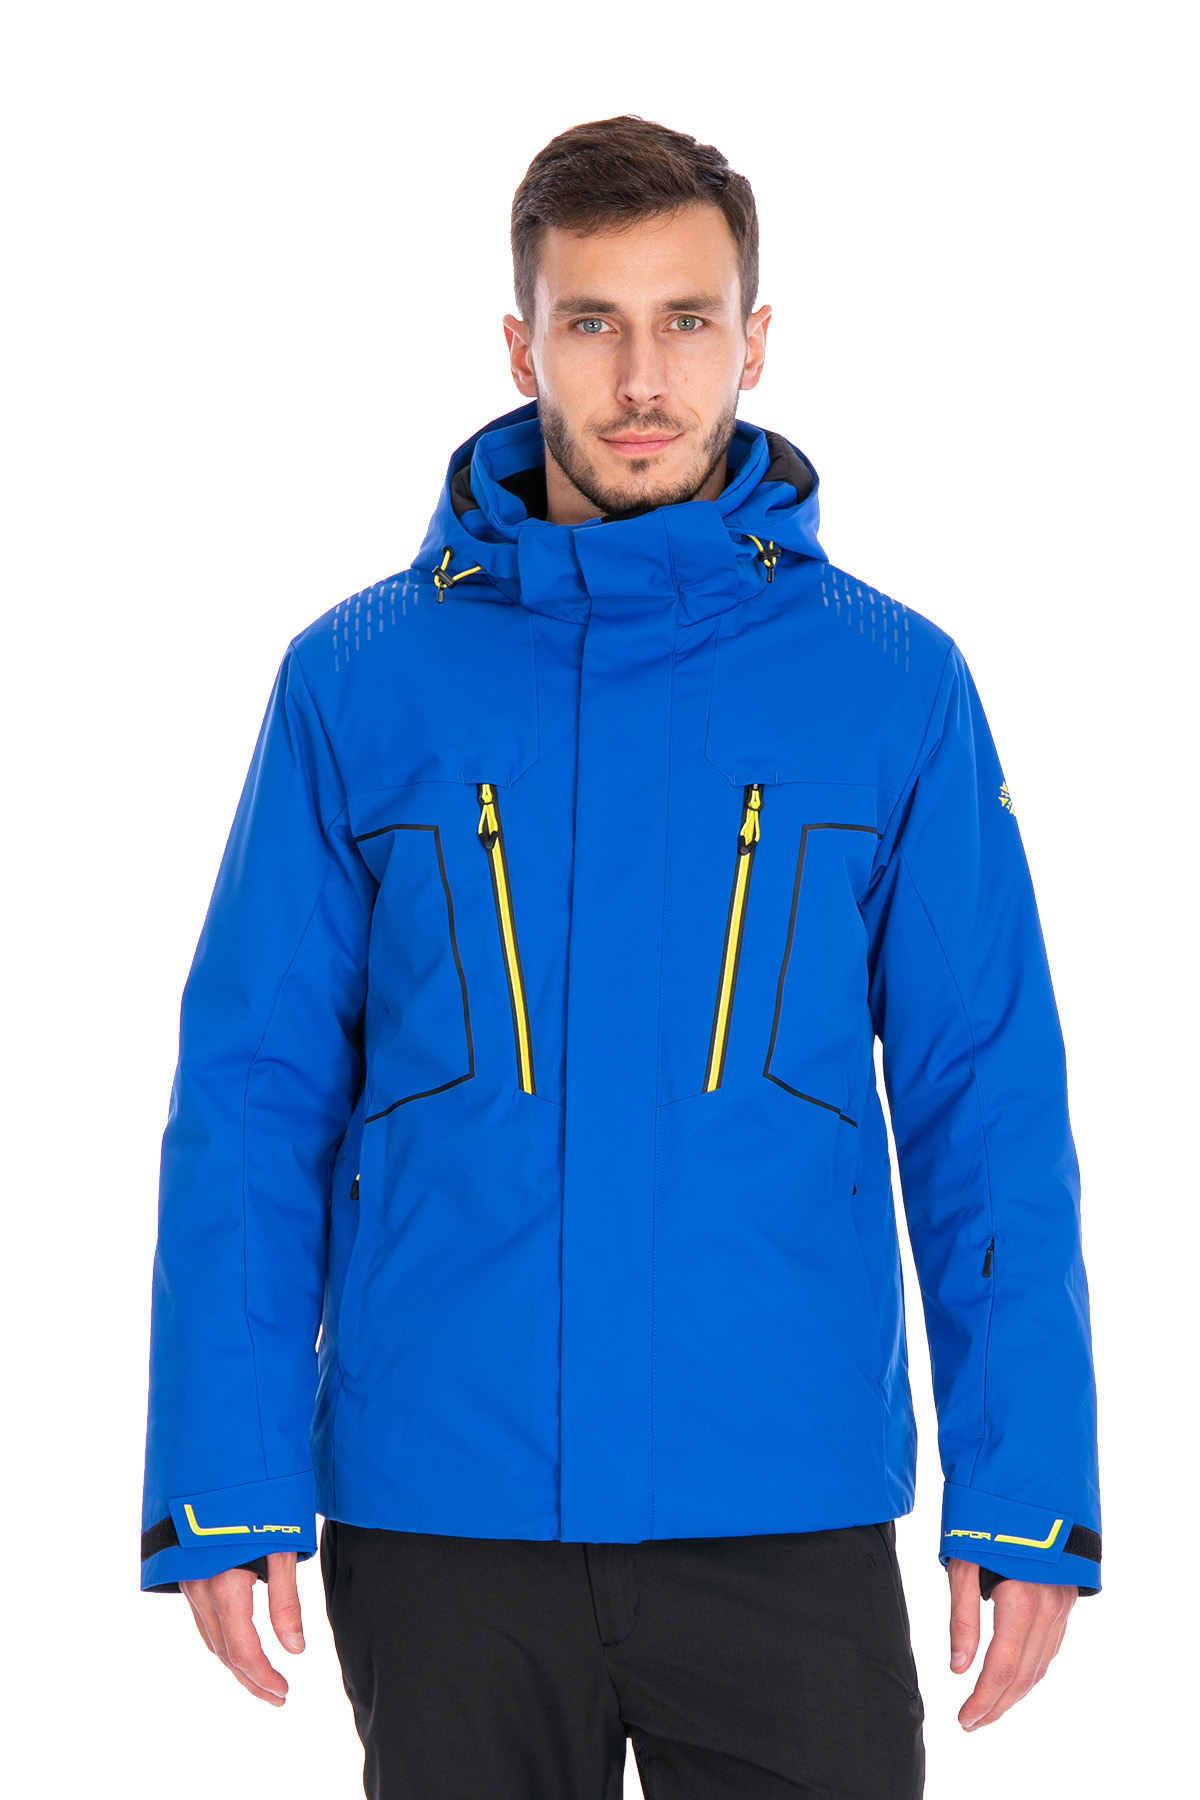 Мужская горнолыжная Куртка Lafor Синий, 767013 (52, xl)